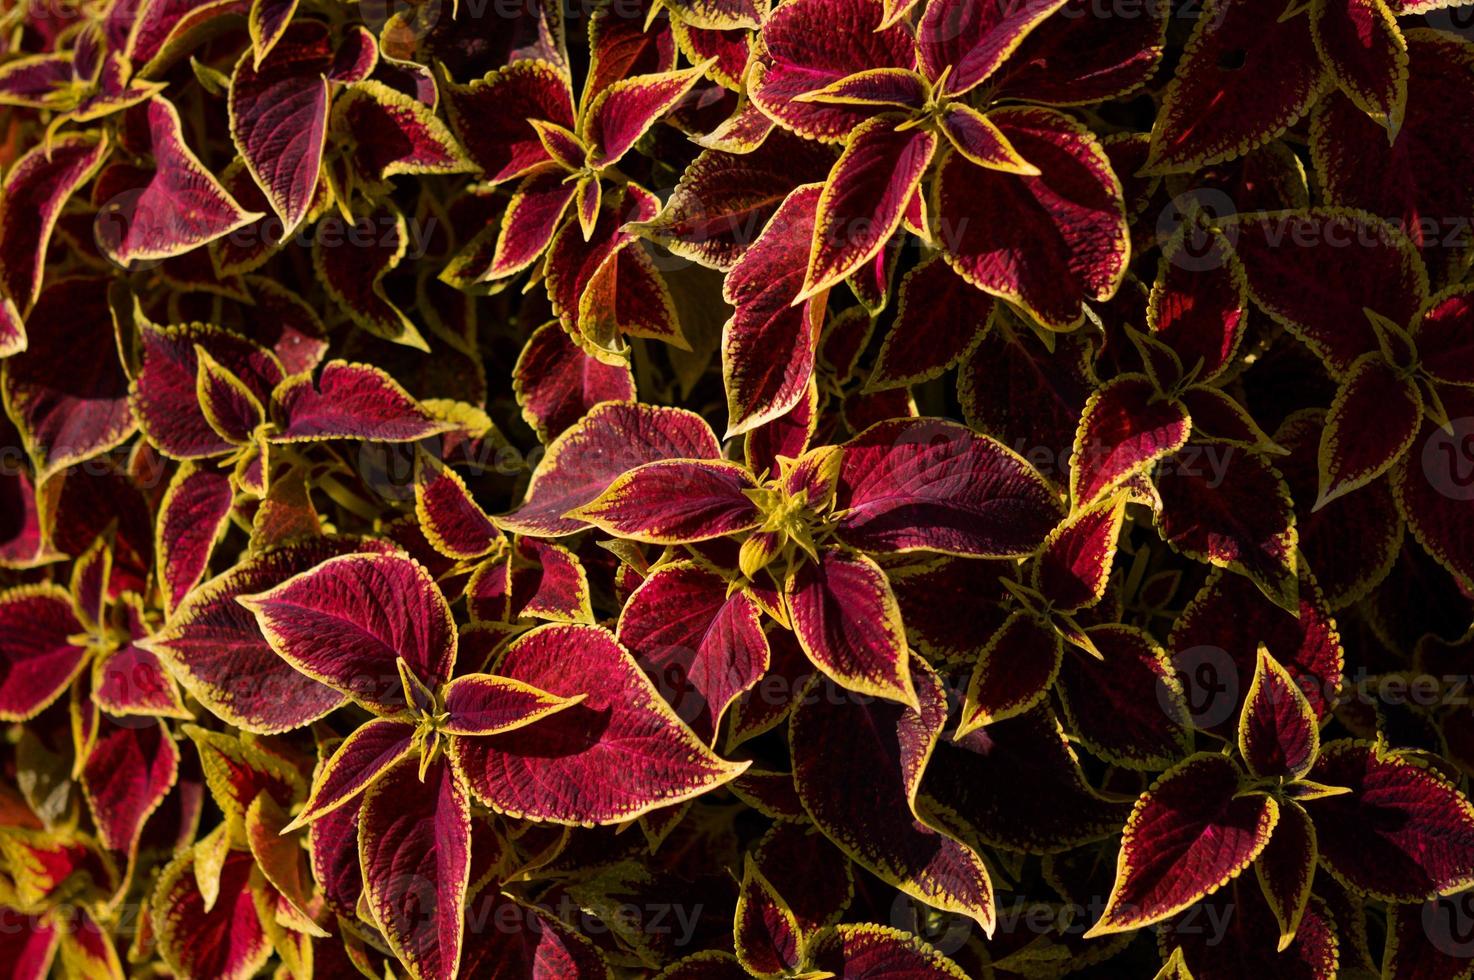 feuilles rouges et jaunes, feuille rouge bordée de jaune. plantes d'ornement. photo